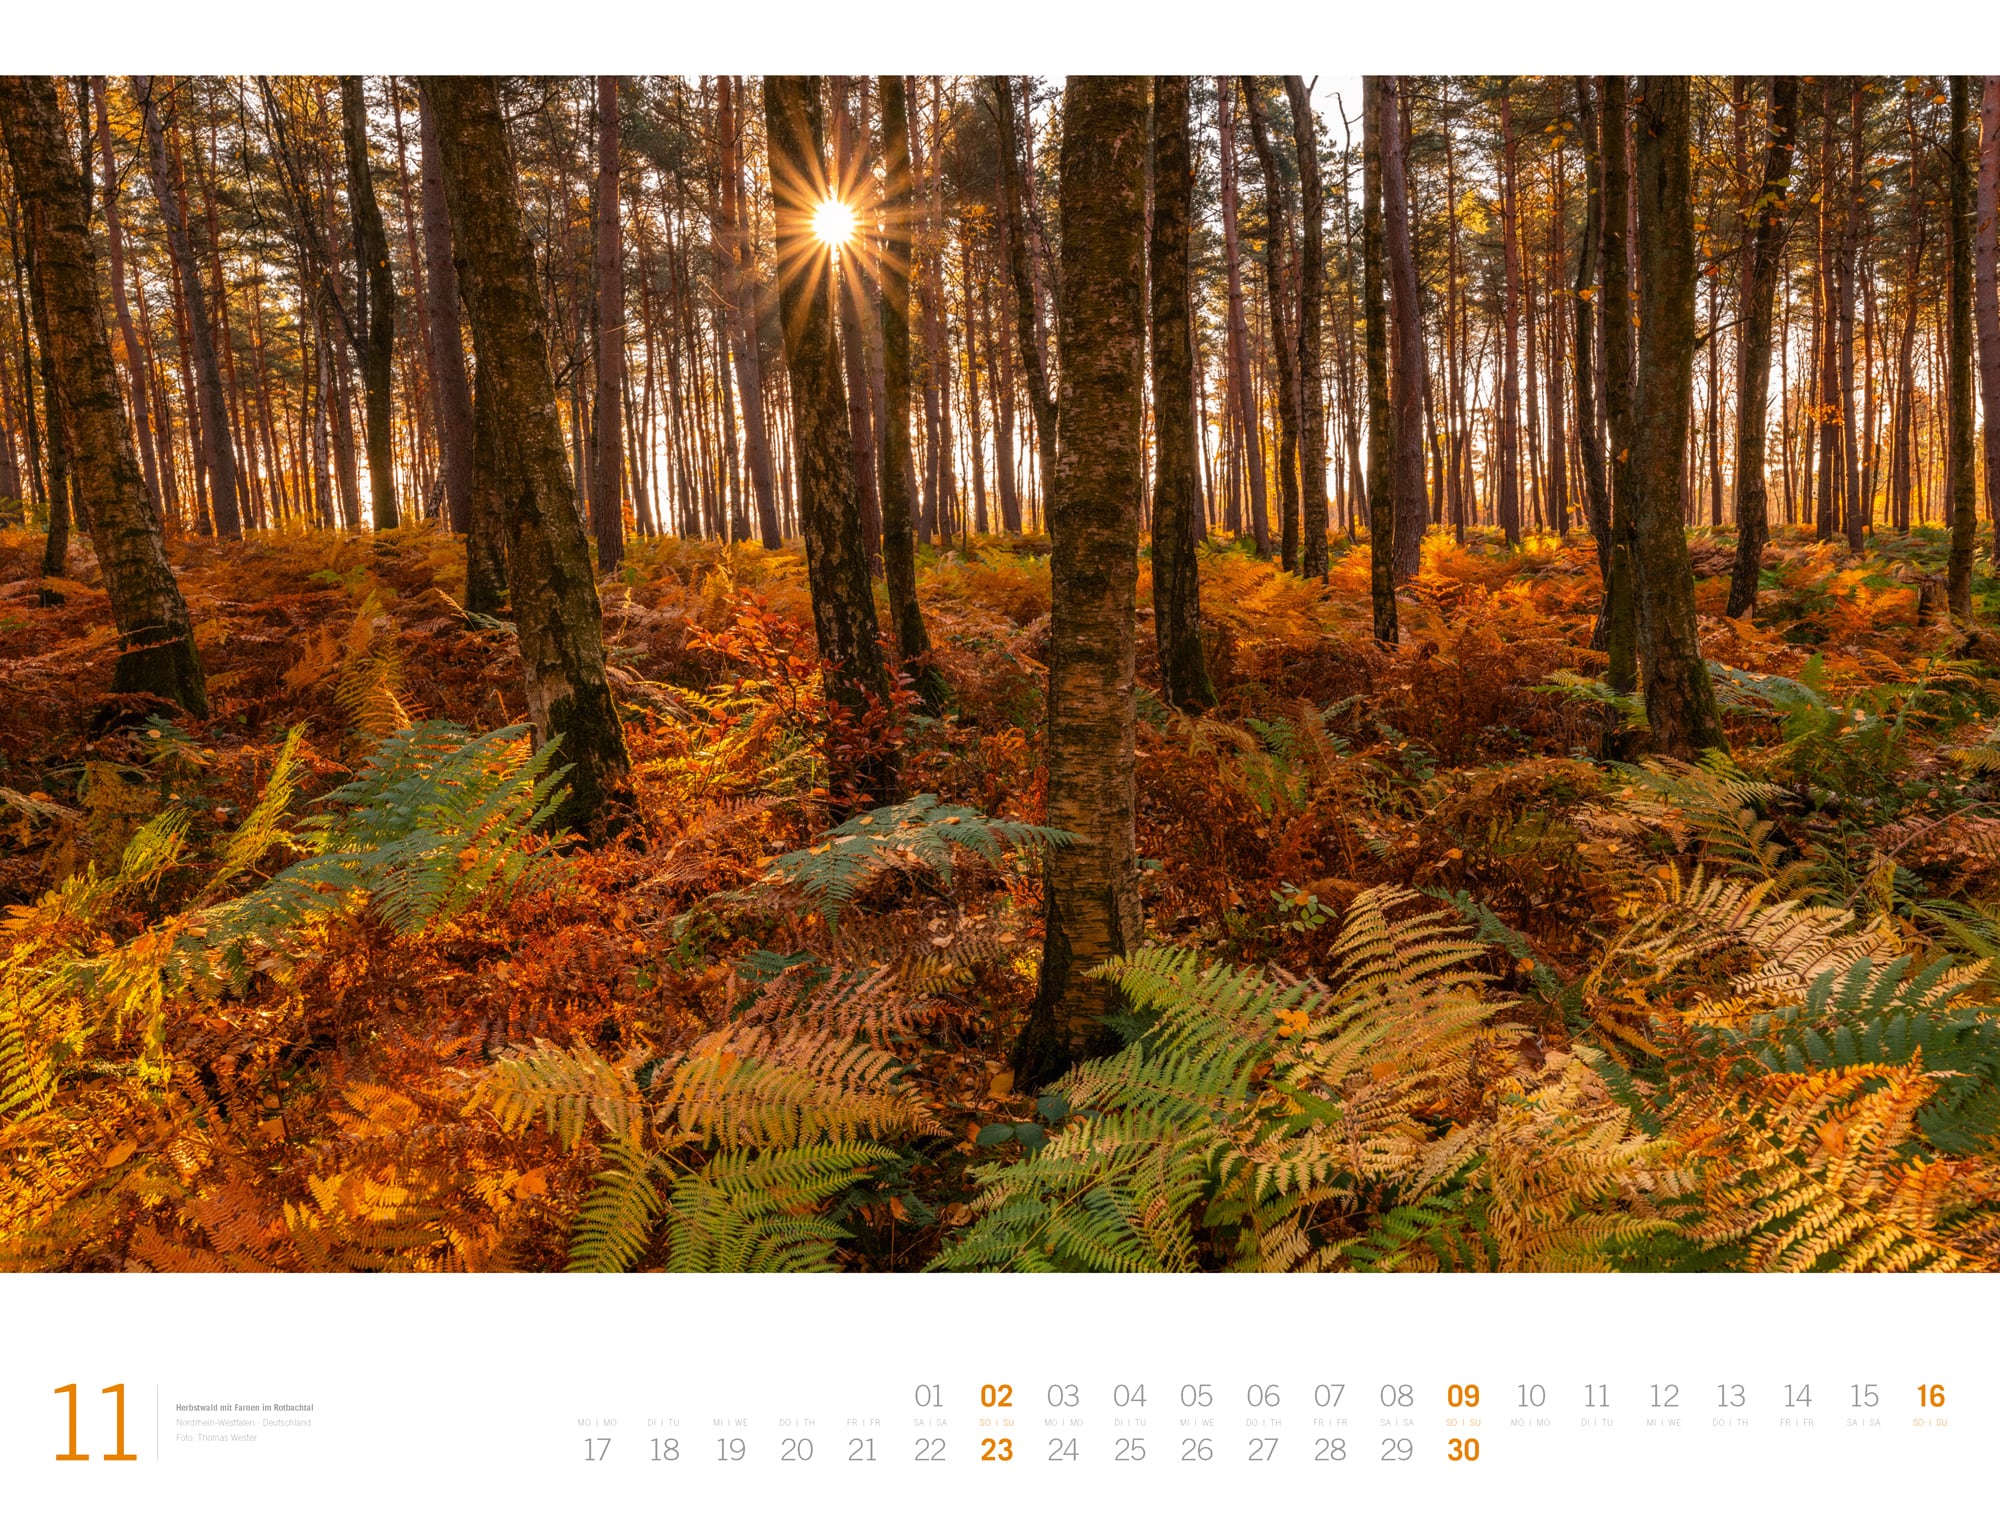 Ackermann Calendar Forest - Gallery 2025 - Inside View 11